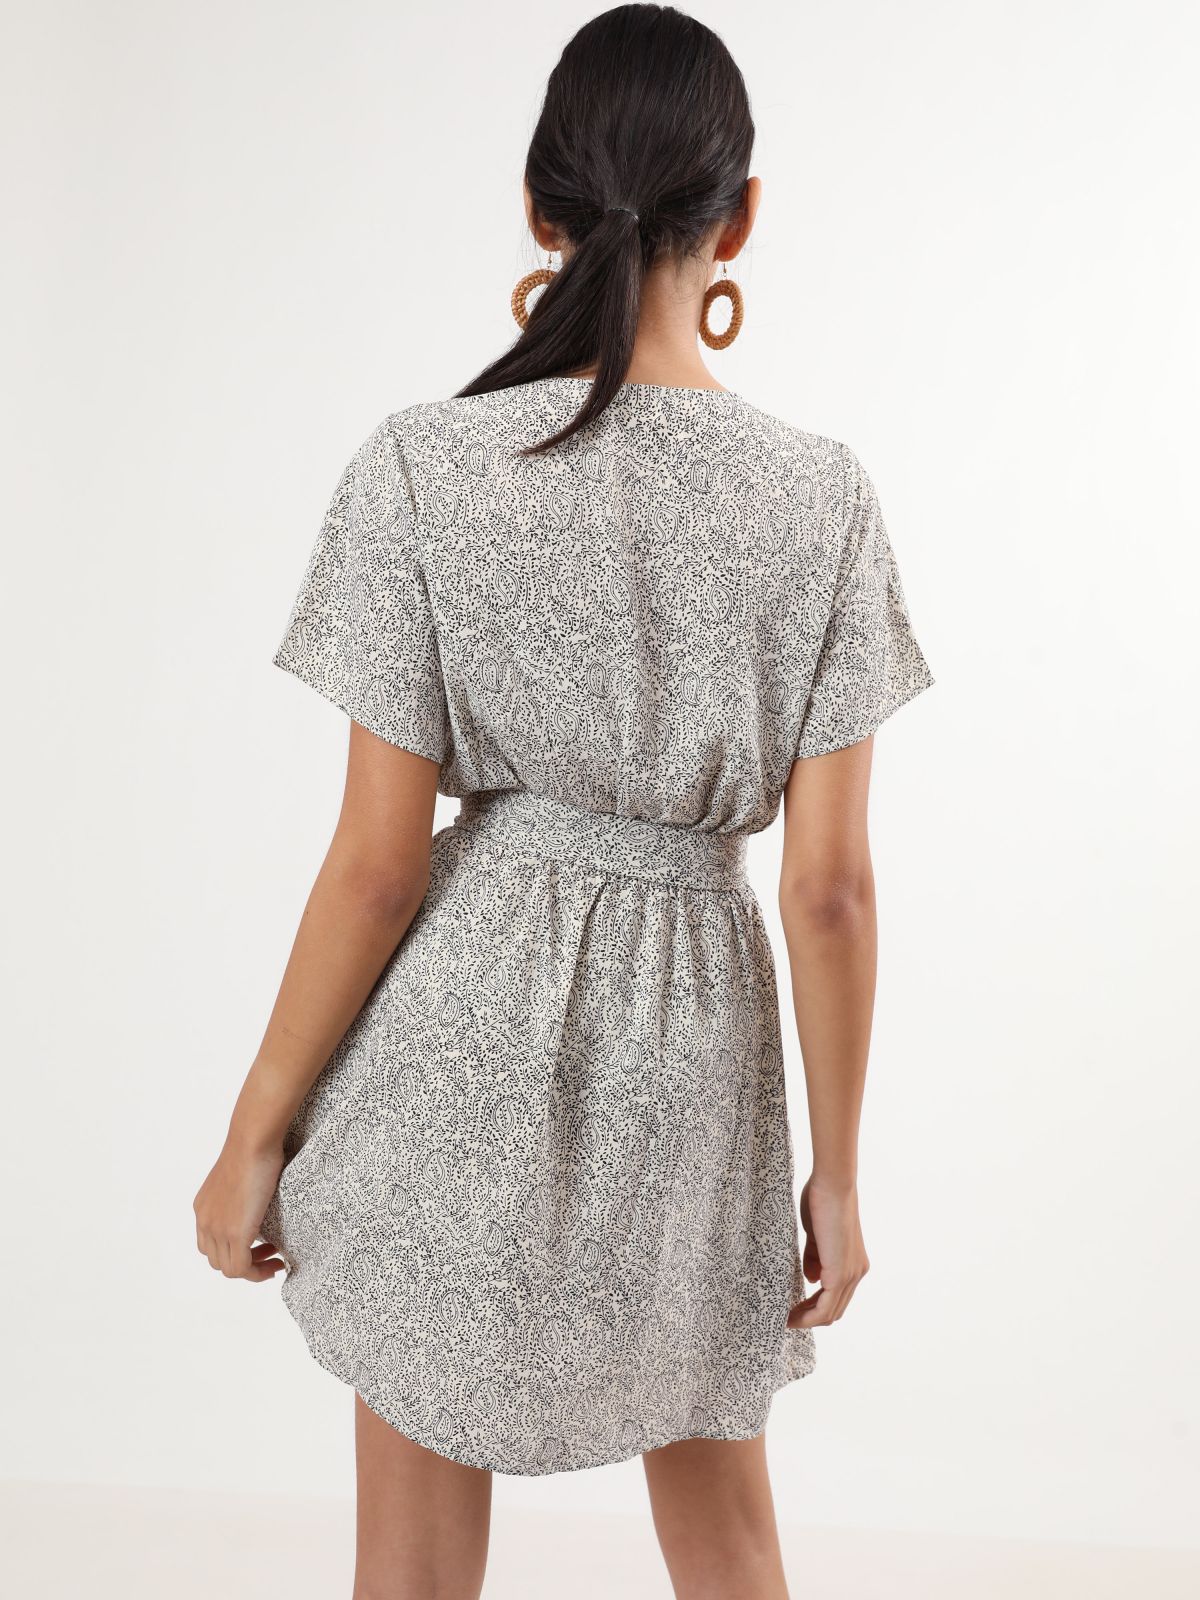  שמלת מיני בהדפס עלים עם חגורת קשירה של YANGA